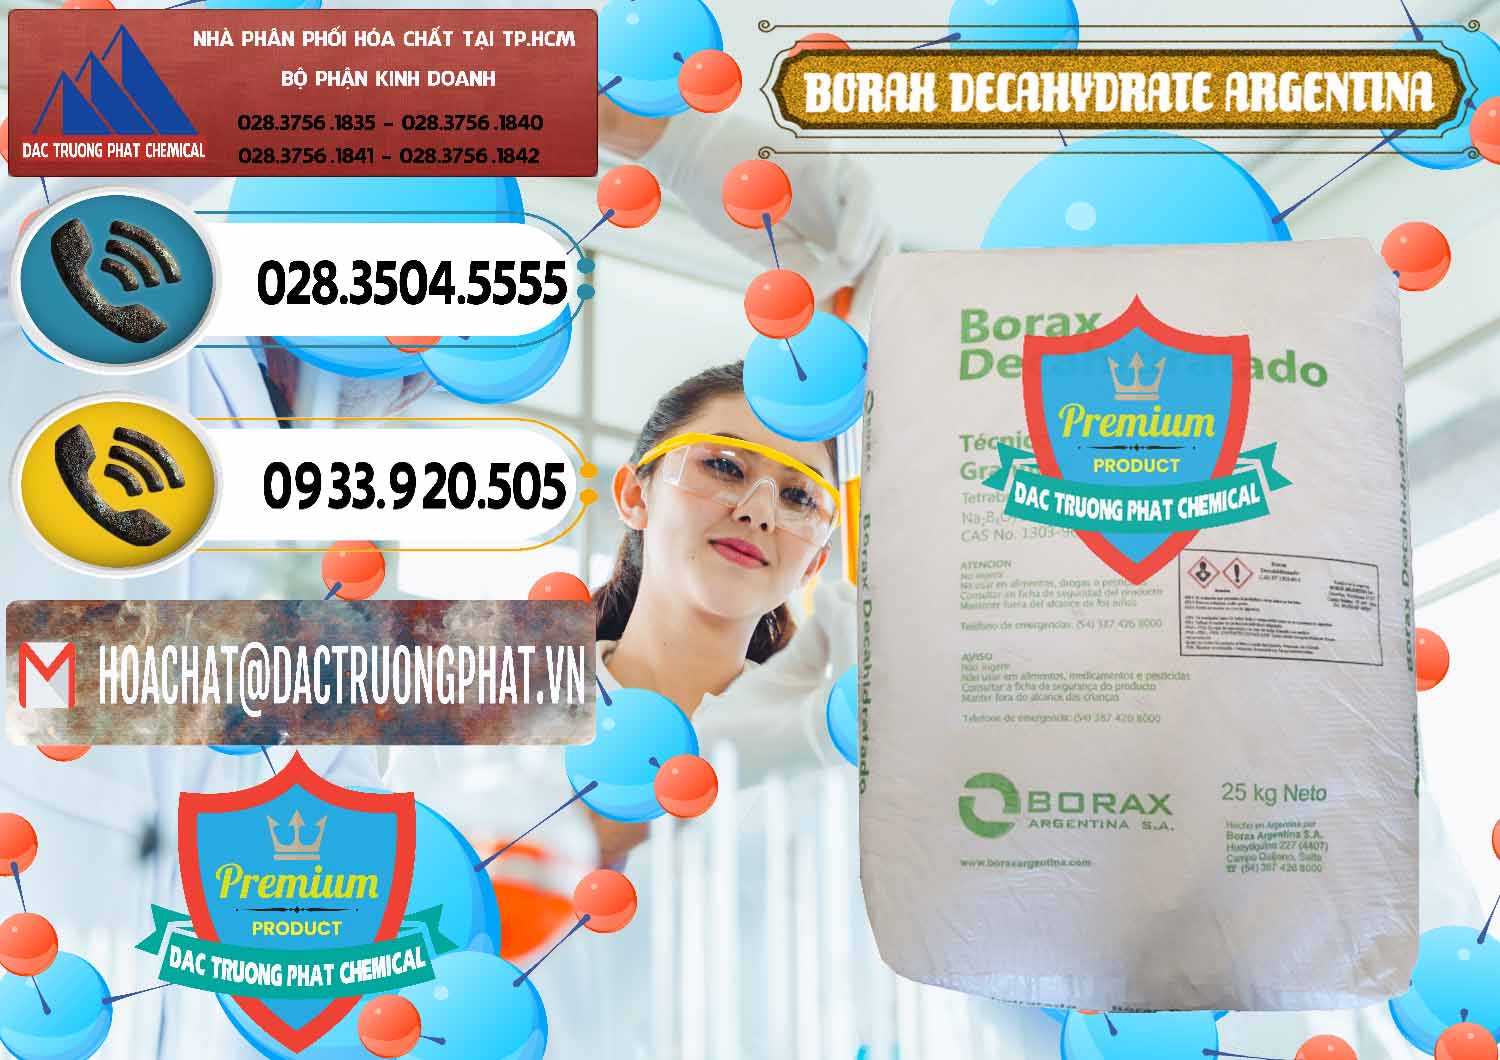 Cty bán _ cung cấp Borax Decahydrate Argentina - 0446 - Nơi chuyên kinh doanh - phân phối hóa chất tại TP.HCM - hoachatdetnhuom.vn